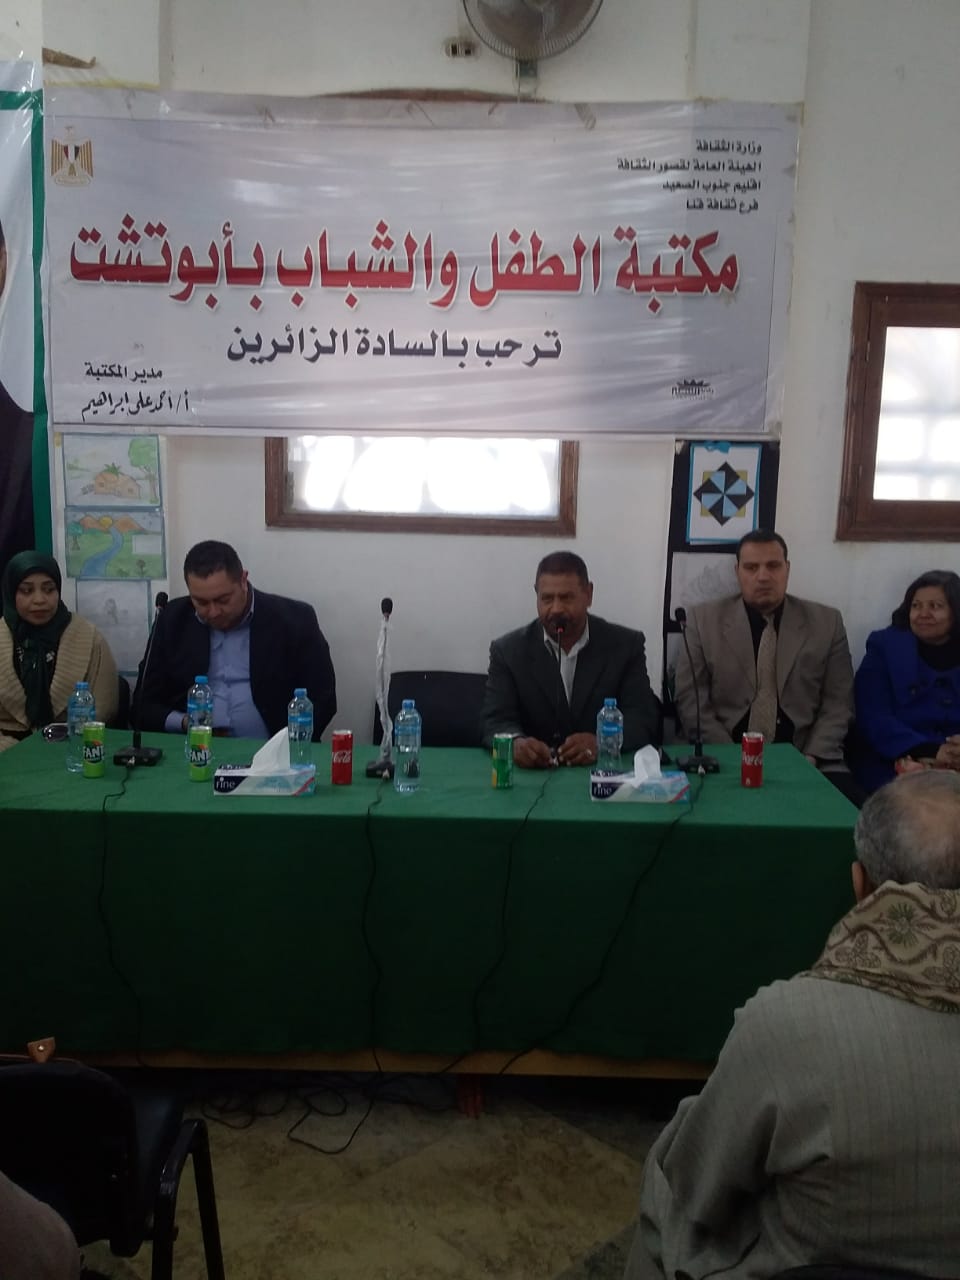   بالصور||  مؤتمر حاشد لحملة 100مليون صحة بمدينة ابوتشت شمال محافظة قنا 